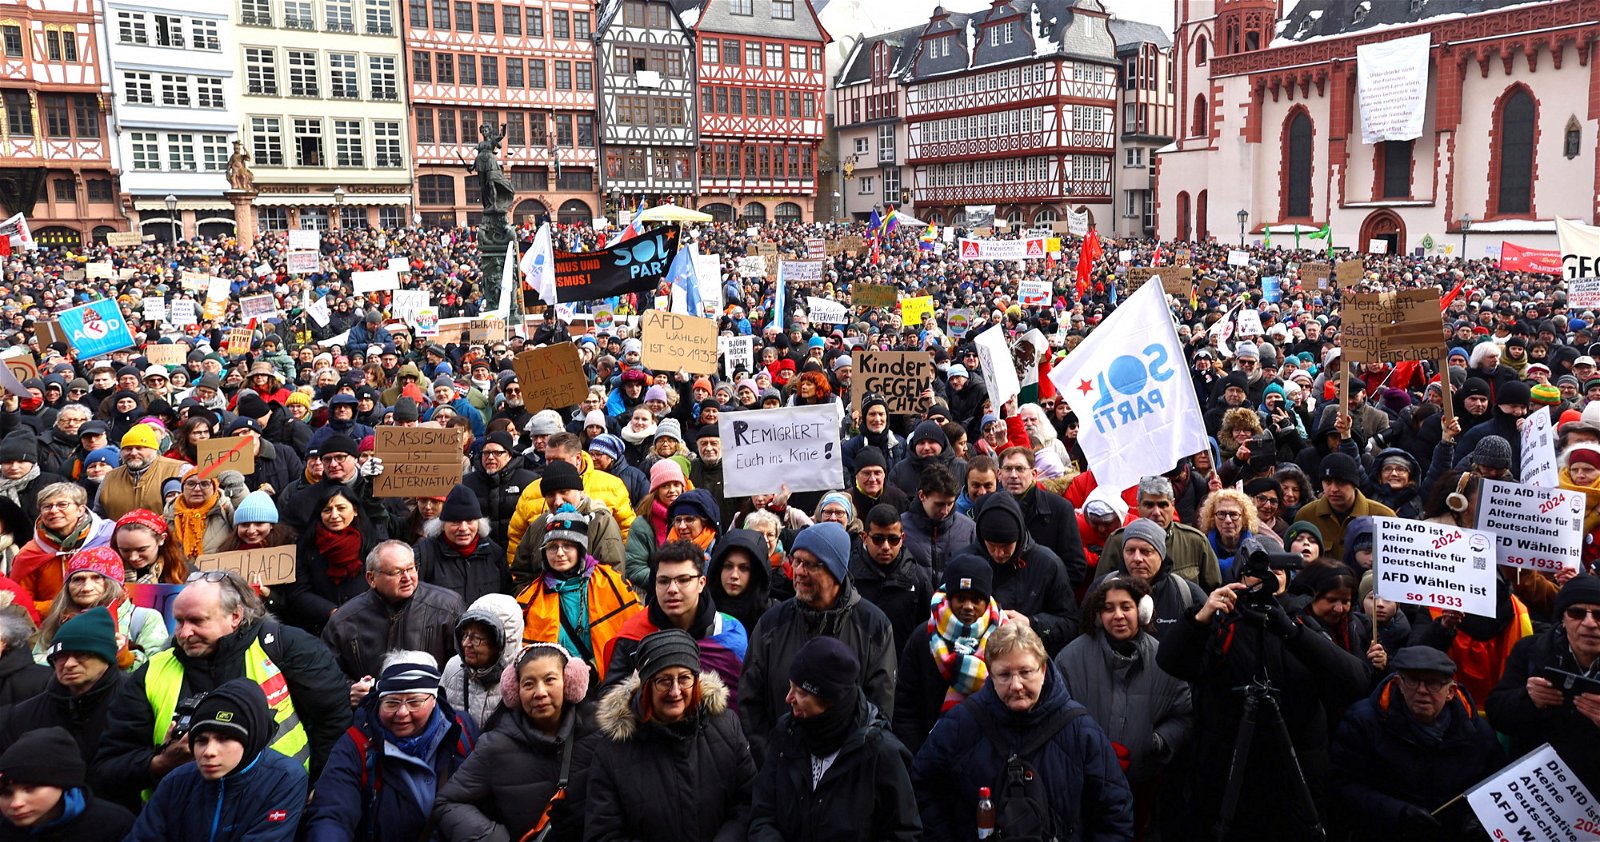 大批抗议者涌入德国各城市参与示威，抵制极右翼德国选择党（AfD），图为当地时间周六在法兰克福的抗议现场。（图取自路透社）